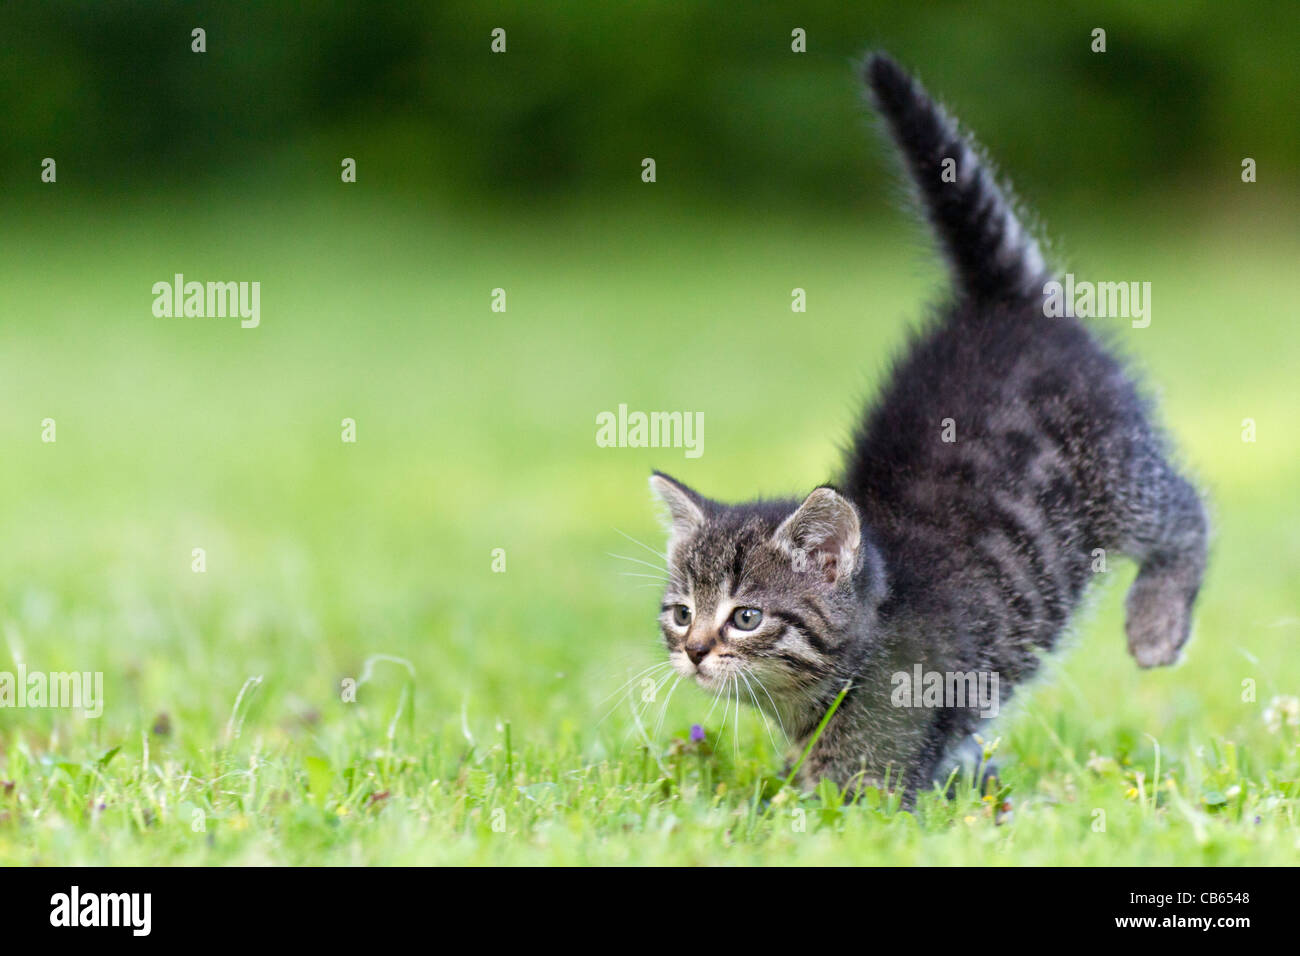 Kitten, running across garden lawn, Lower Saxony, Germany Stock Photo